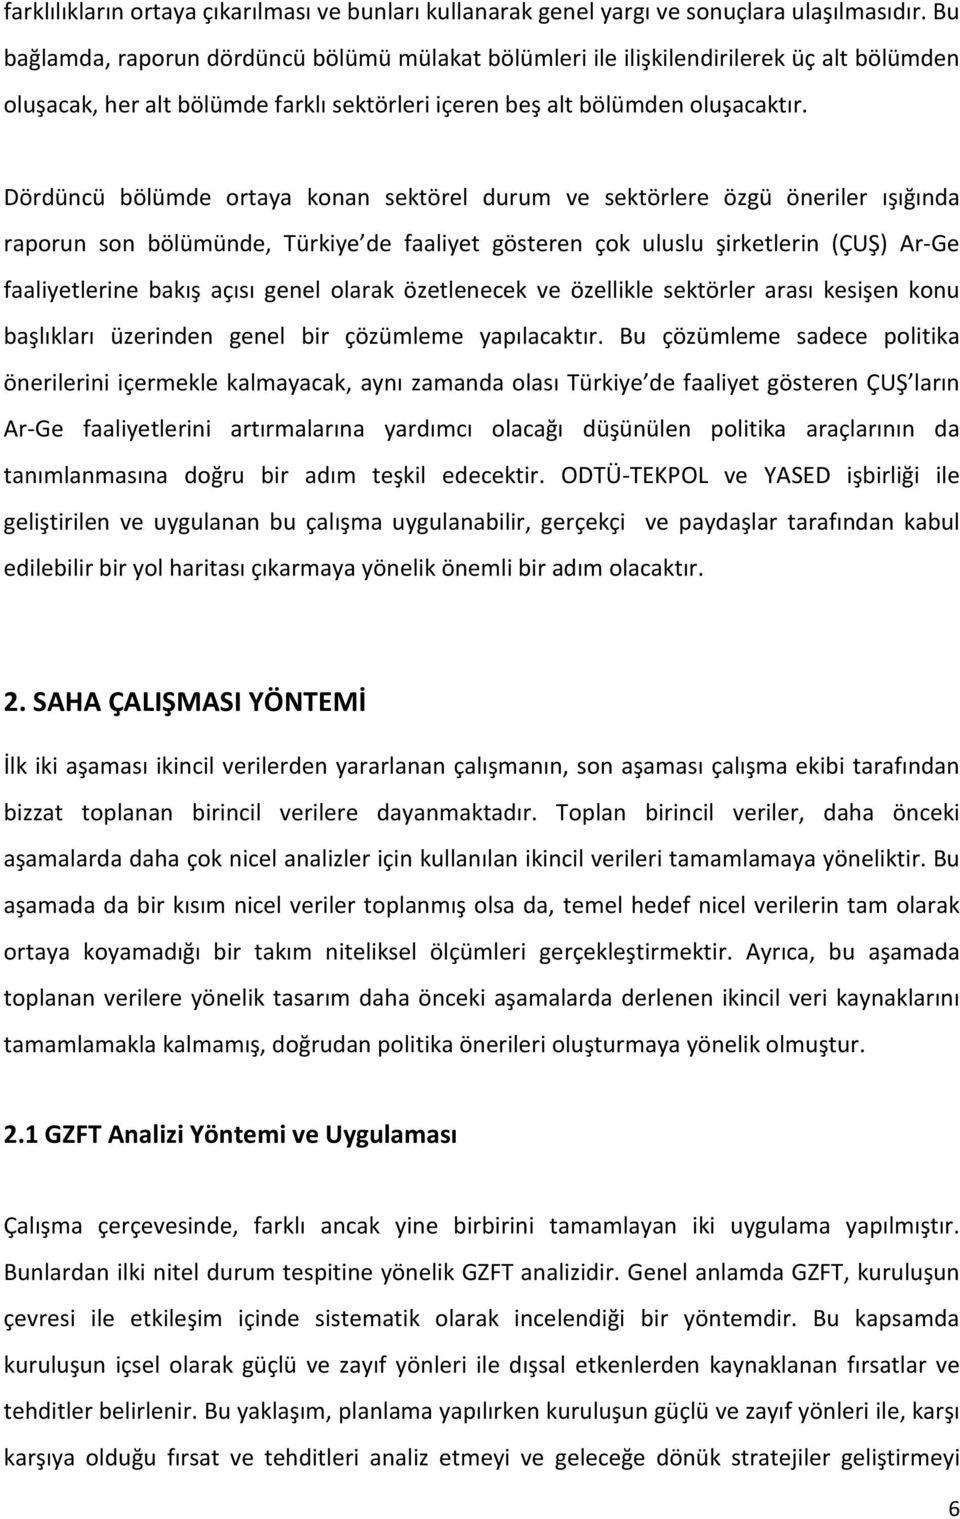 Dördüncü bölümde ortaya konan sektörel durum ve sektörlere özgü öneriler ışığında raporun son bölümünde, Türkiye de faaliyet gösteren çok uluslu şirketlerin (ÇUŞ) Ar-Ge faaliyetlerine bakış açısı